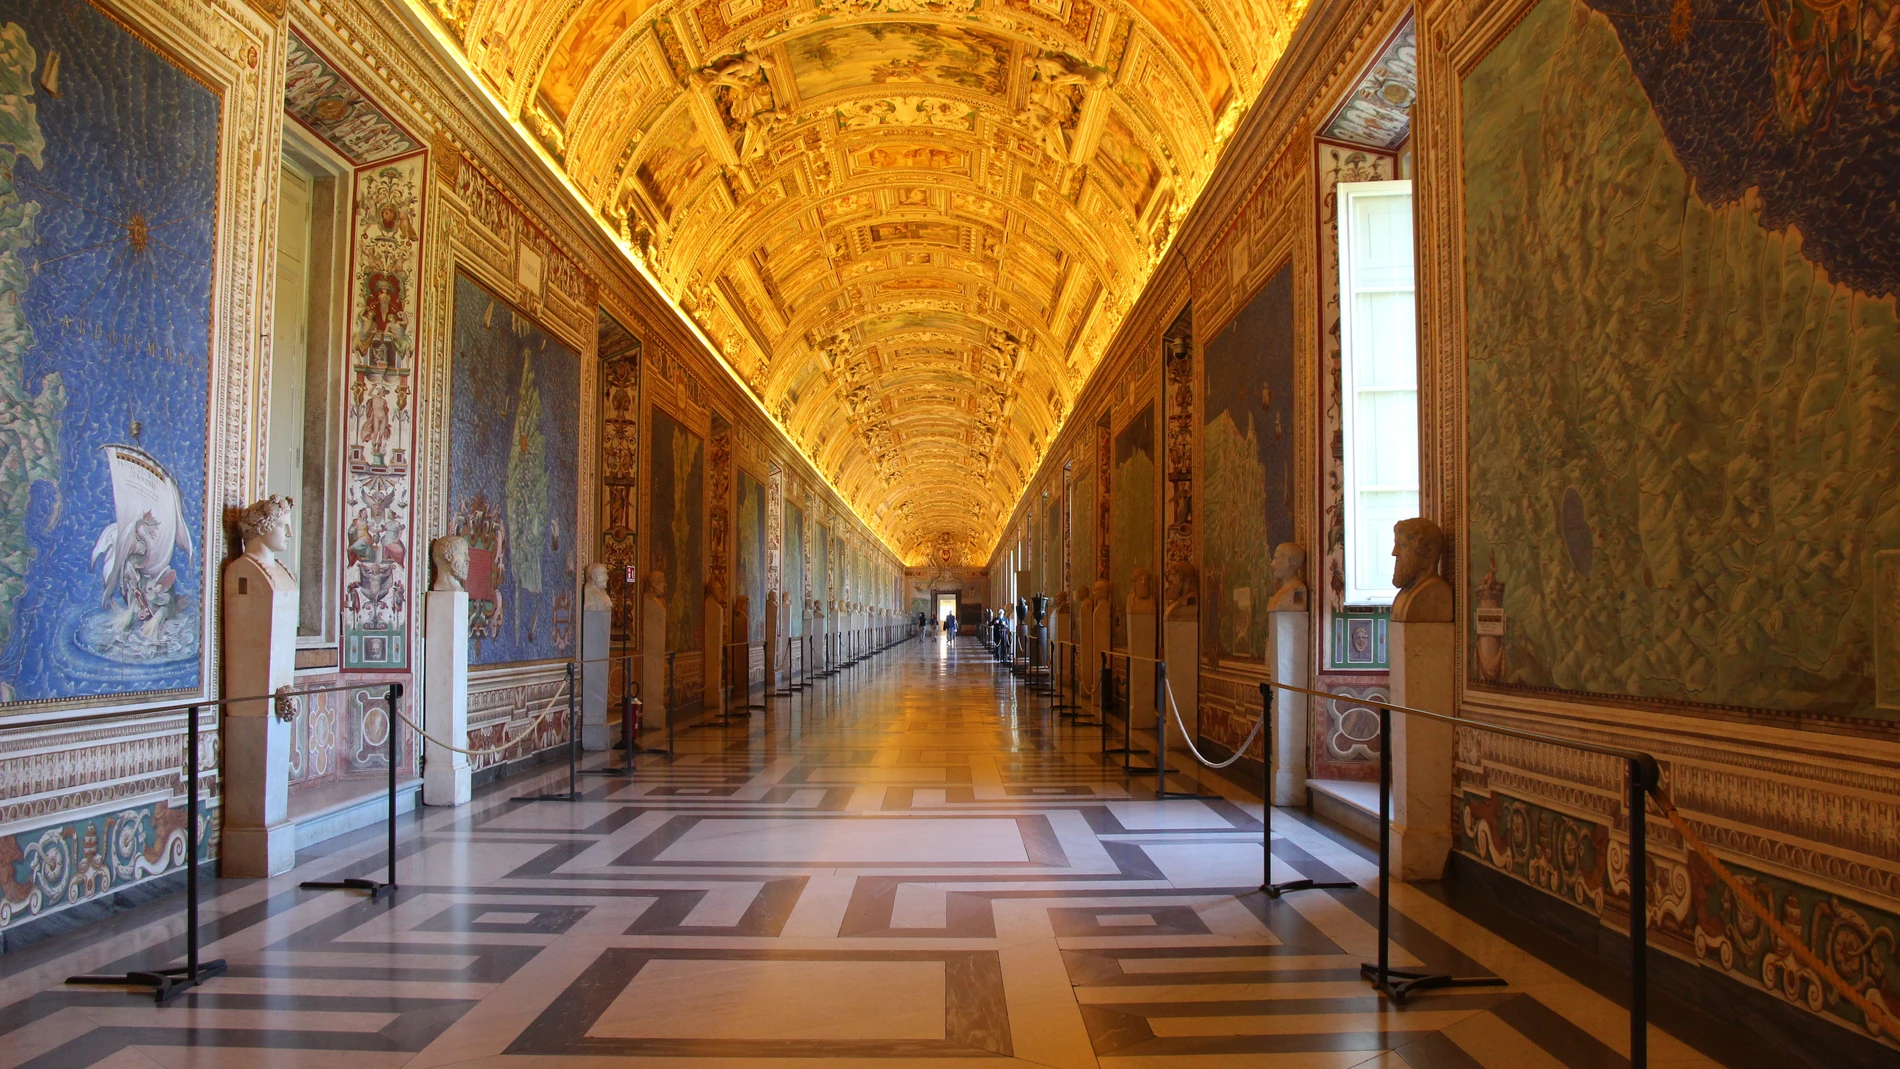 80 dias despues se pueden visitar los Museos Vaticanos